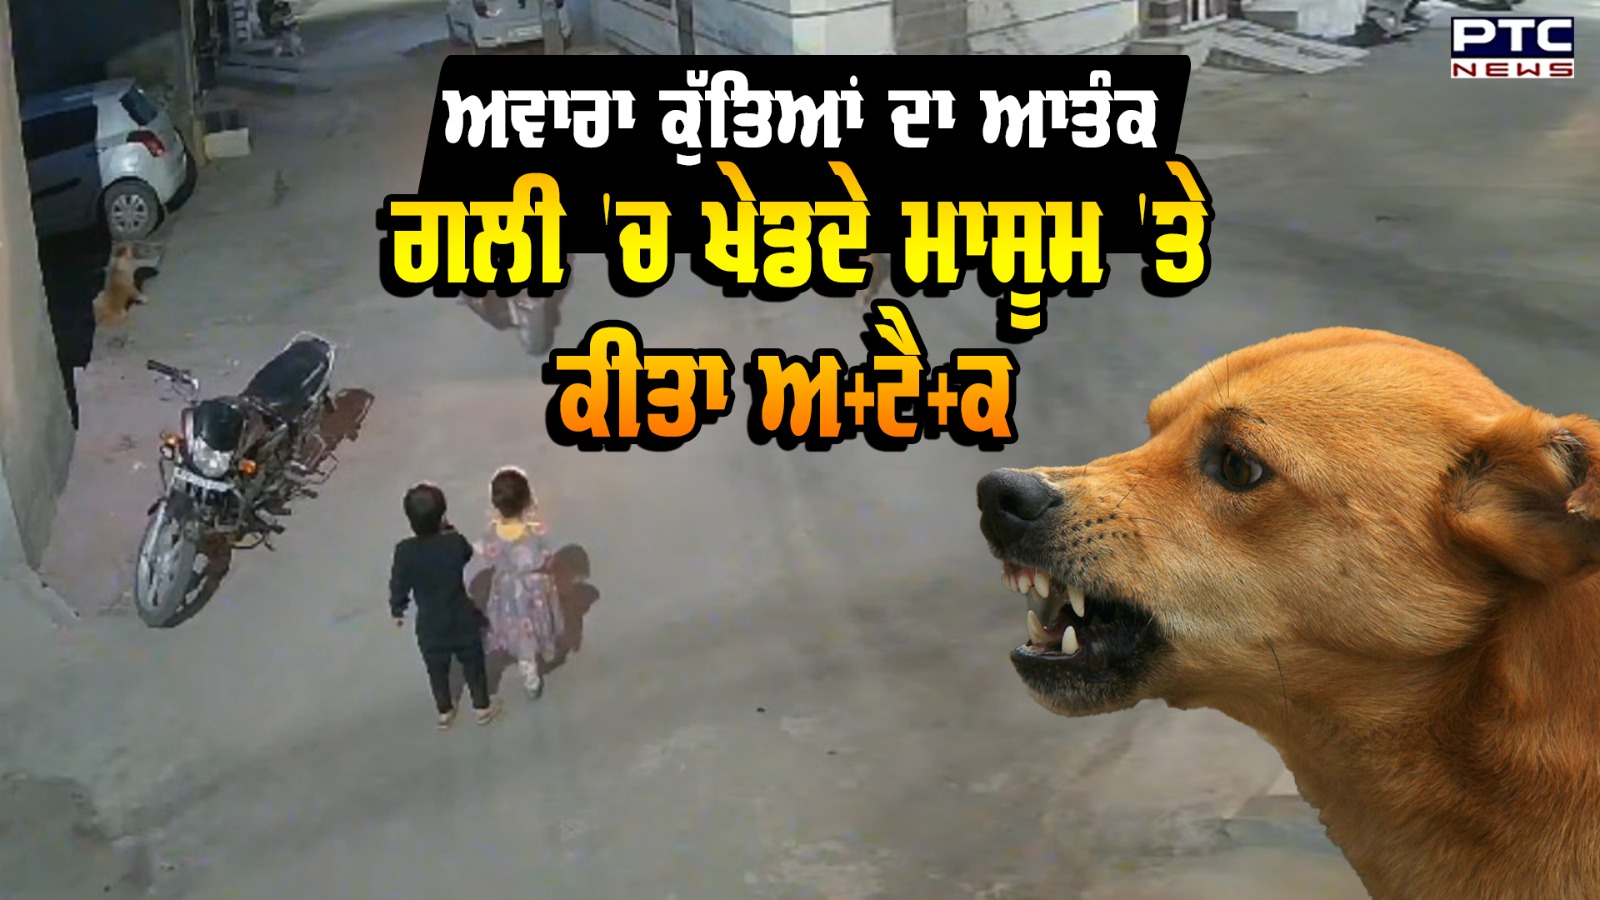 Stray Dogs Attack: ਅਵਾਰਾ ਕੁੱਤਿਆਂ ਦਾ ਆਤੰਕ, ਗਲੀ 'ਚ ਖੇਡਦੇ ਮਾਸੂਮਾਂ 'ਤੇ ਕੀਤਾ ਹਮਲਾ